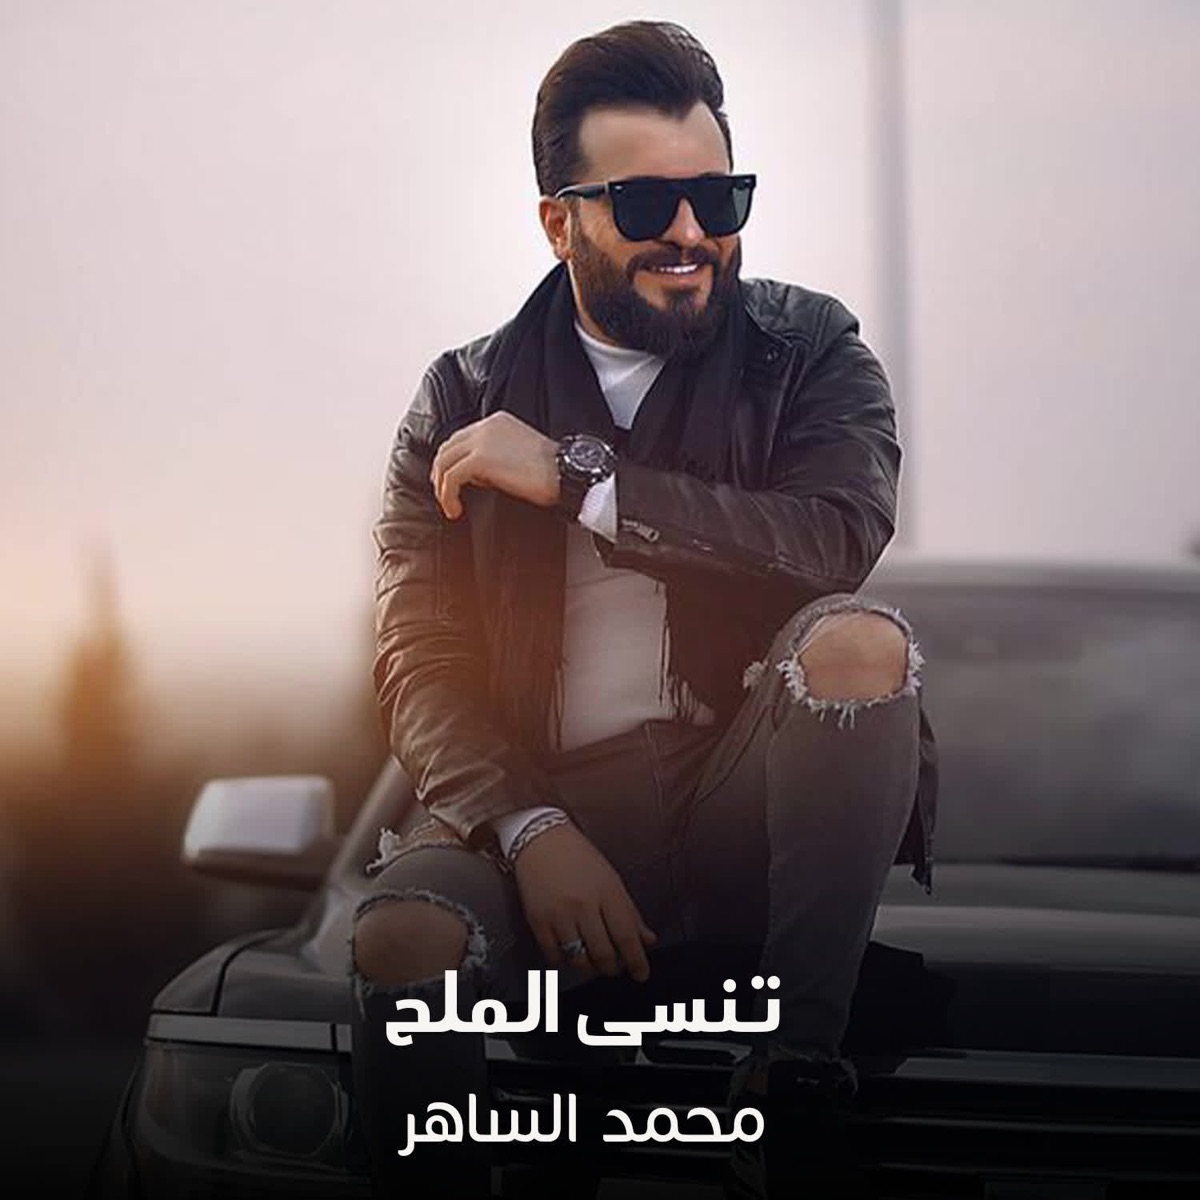 يما الحب يما - Single - Album by محمد الساهر - Apple Music